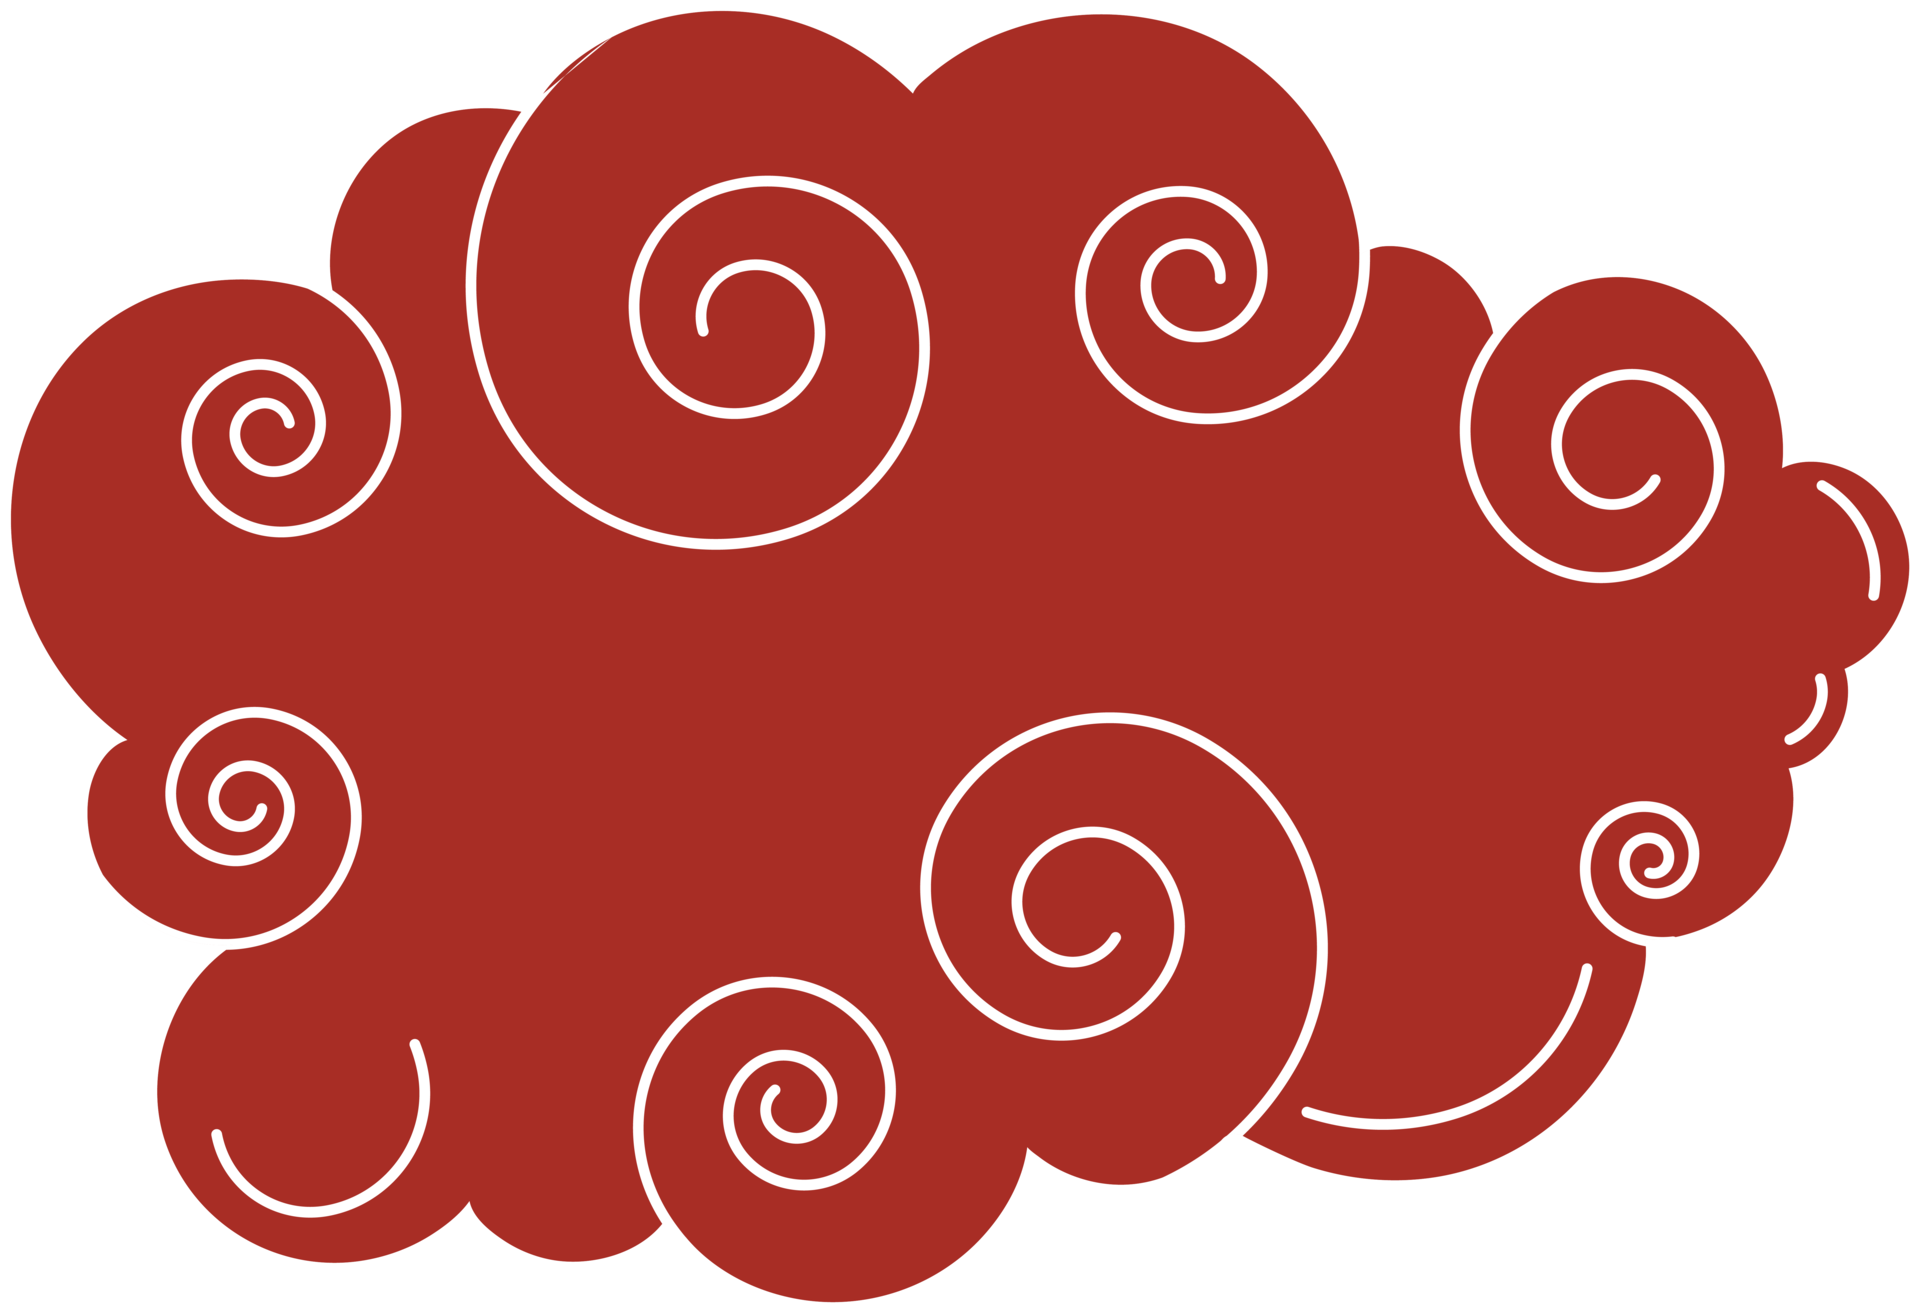 nuvem chinesa. elemento de design vermelho e branco curvo tradicional  13492564 PNG